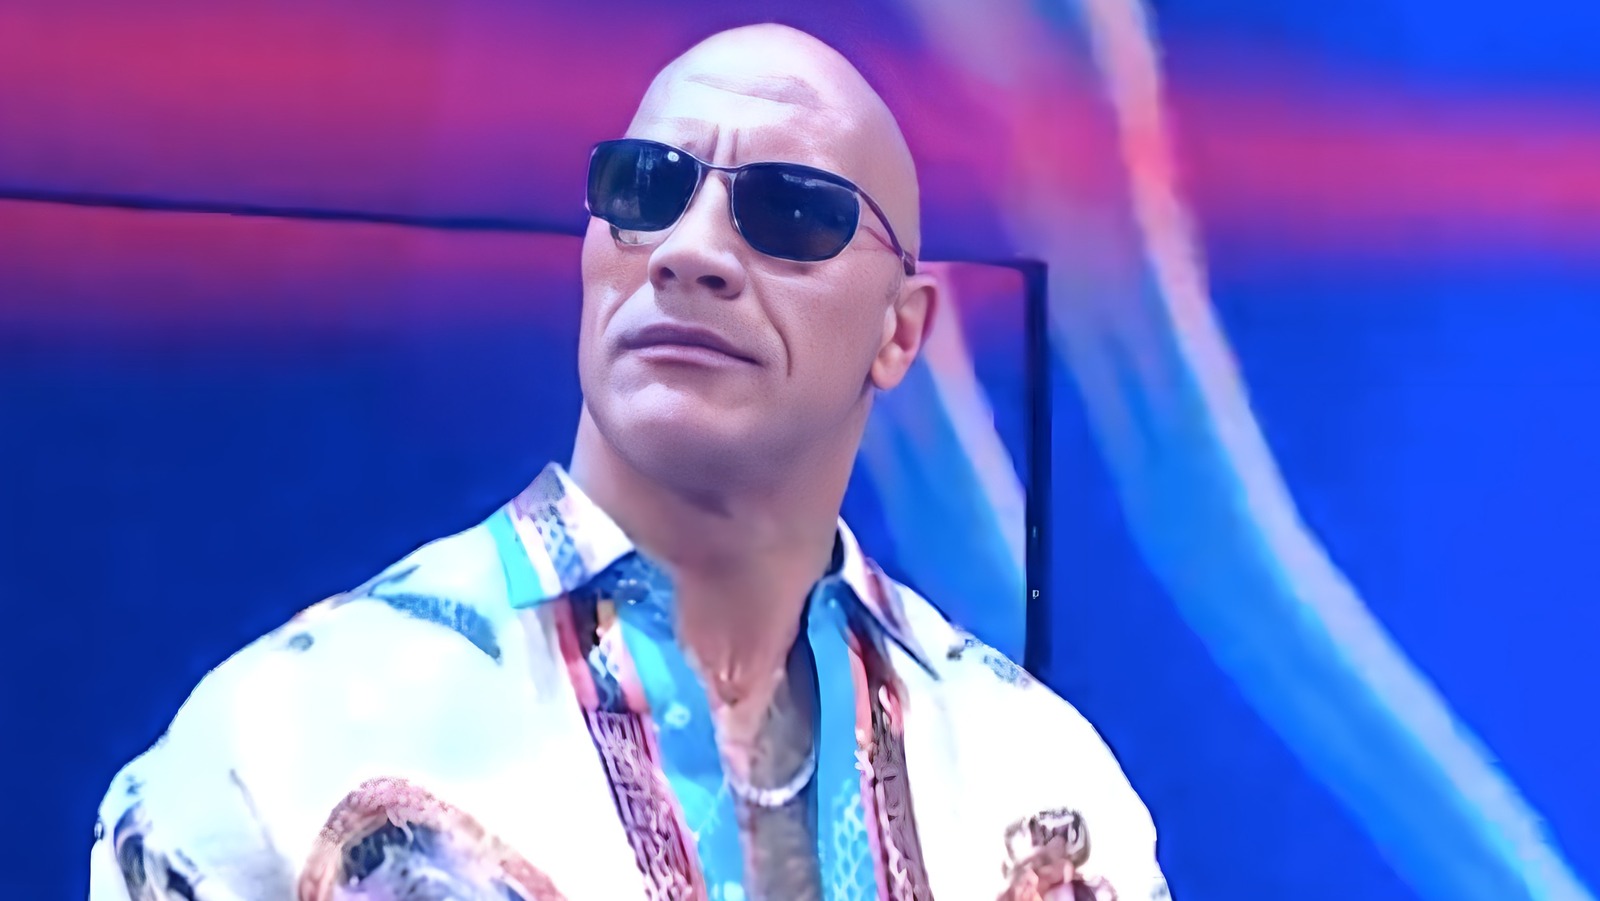 Detalles detrás del escenario en el segmento de WWE SmackDown que involucra a The Rock y Roman Reigns